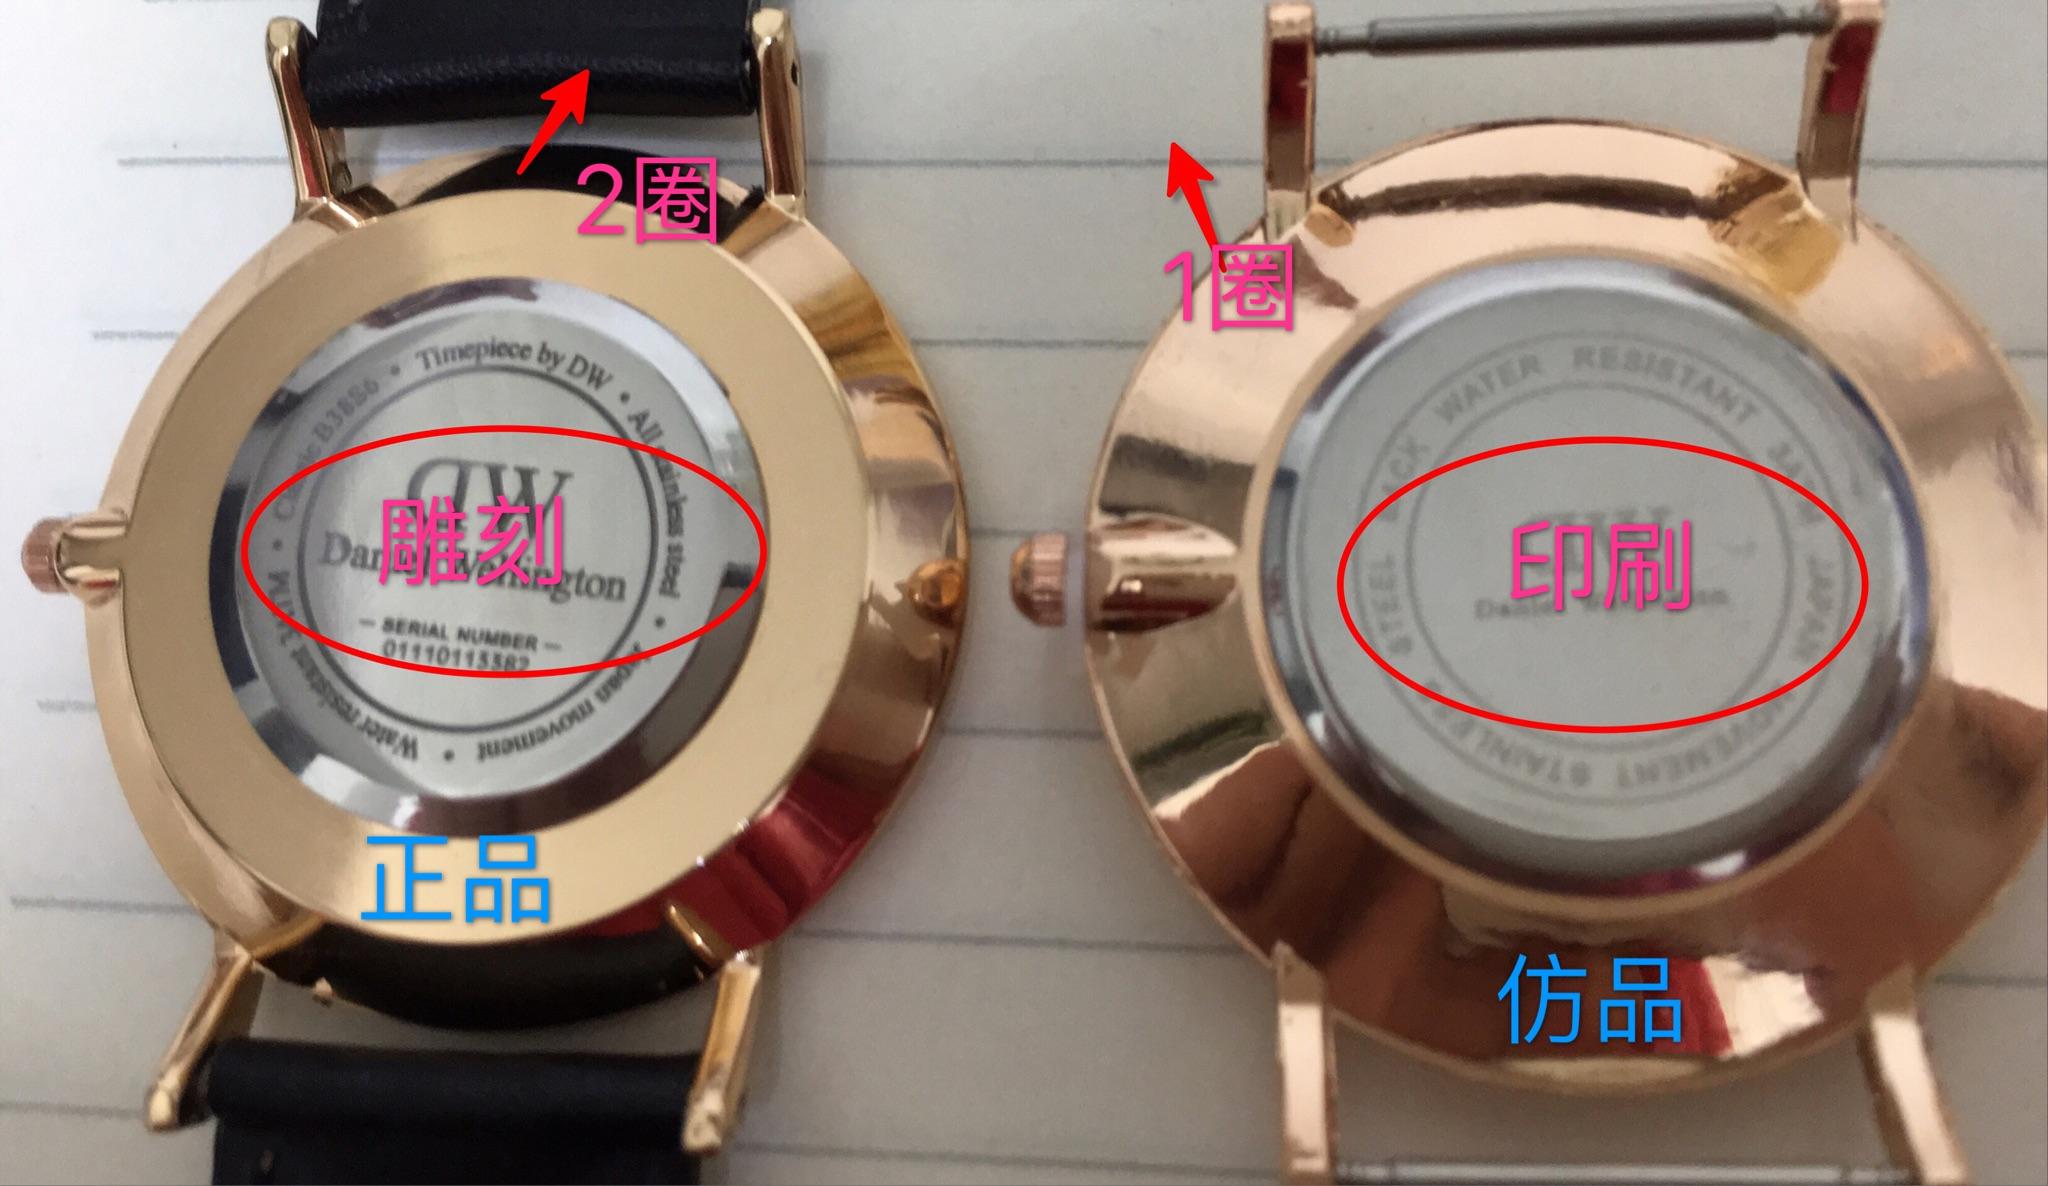 dw手表正品和高仿图解图片